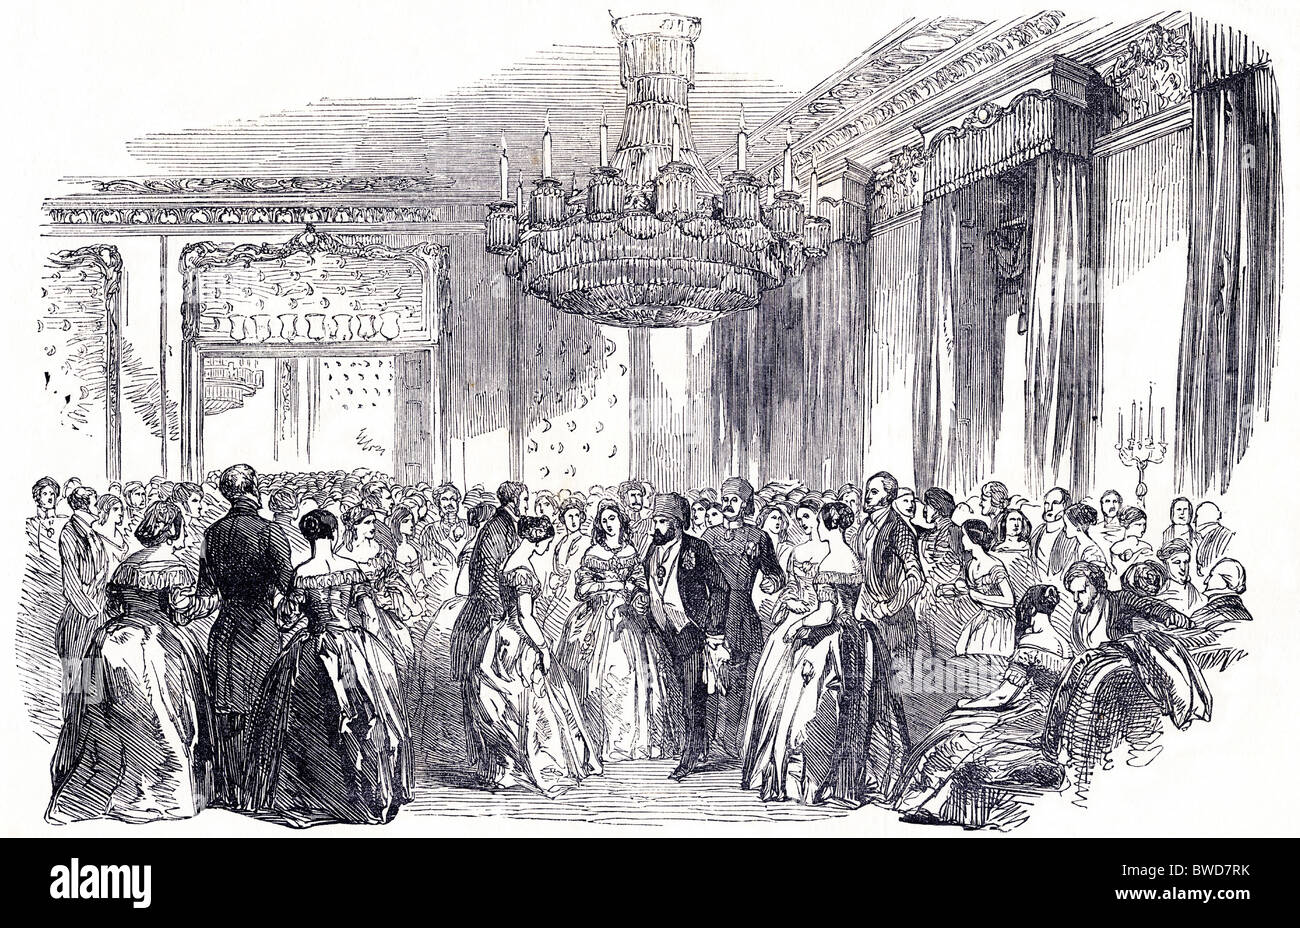 Le Londres victorien. La gravure de l'époque victorienne d'un Grand bal à l'ambassade de Turquie en date du 26 mai 1849 Banque D'Images